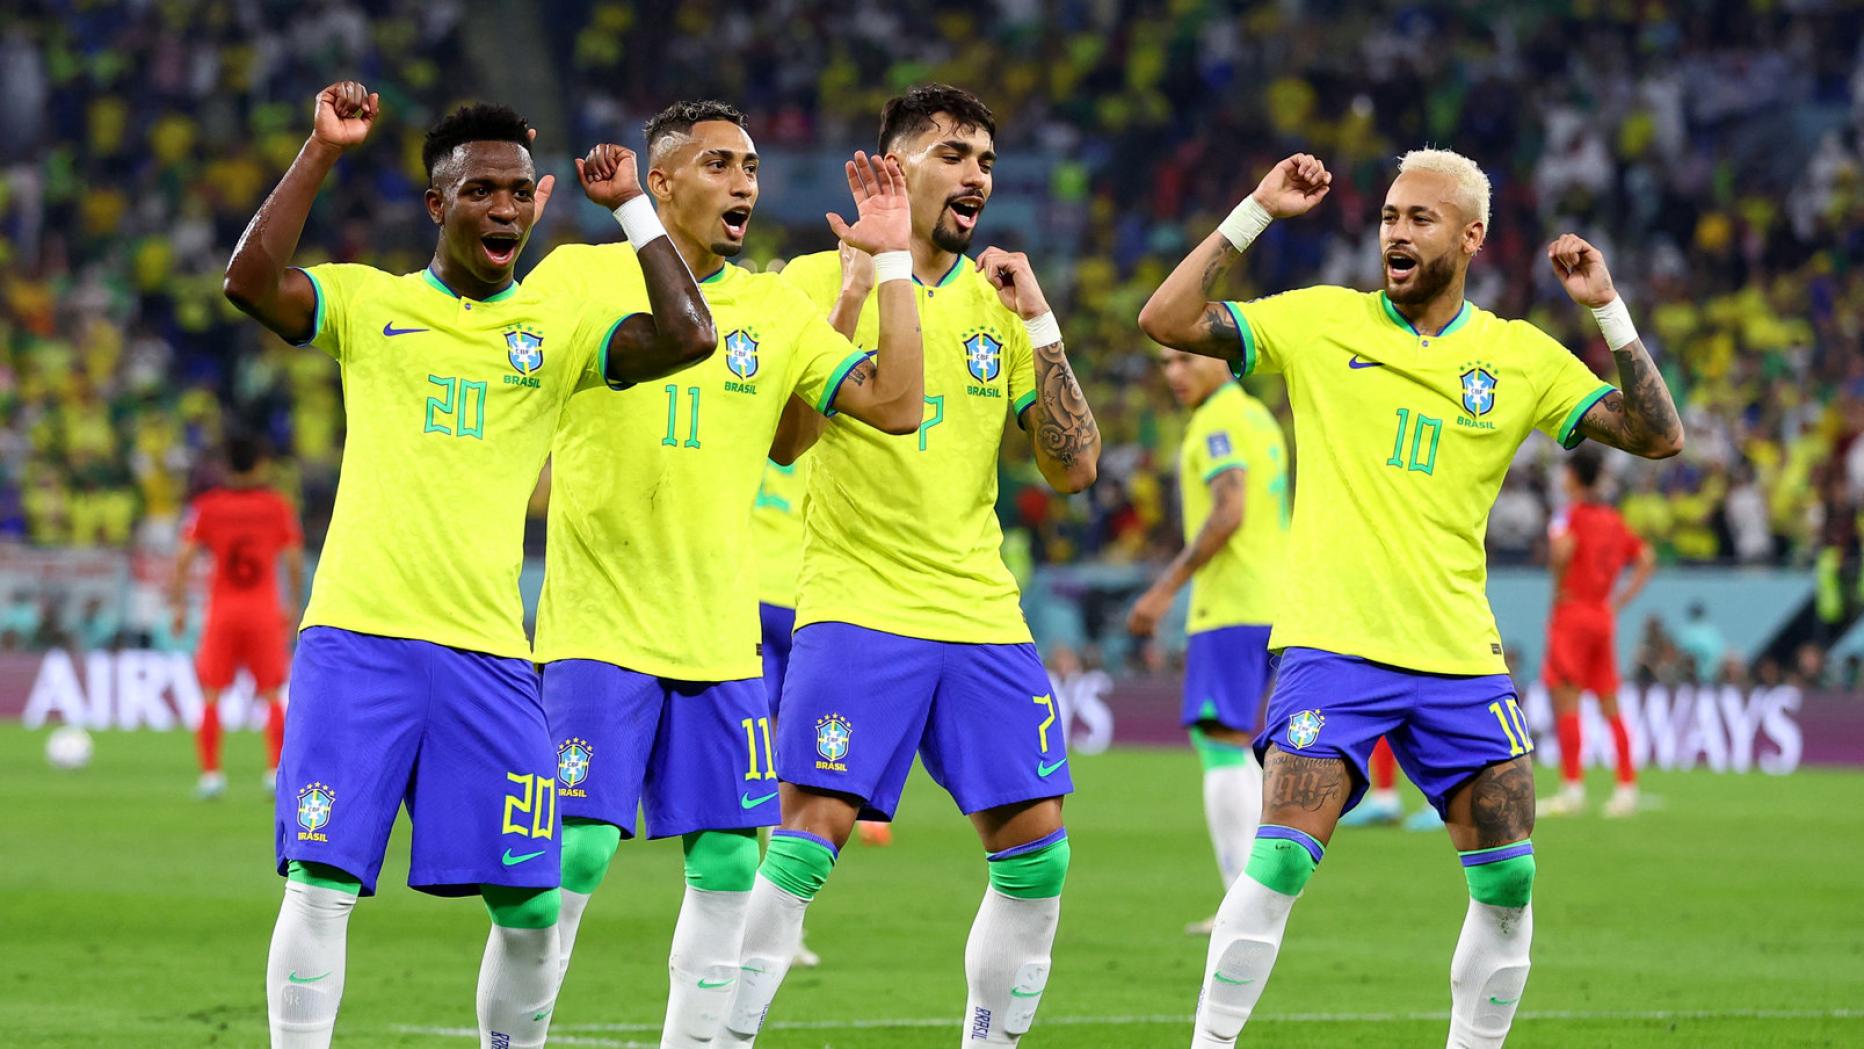 Eine brasilianische WM-Gala zu Ehren der Fußball-Legende Pelé kurier.at